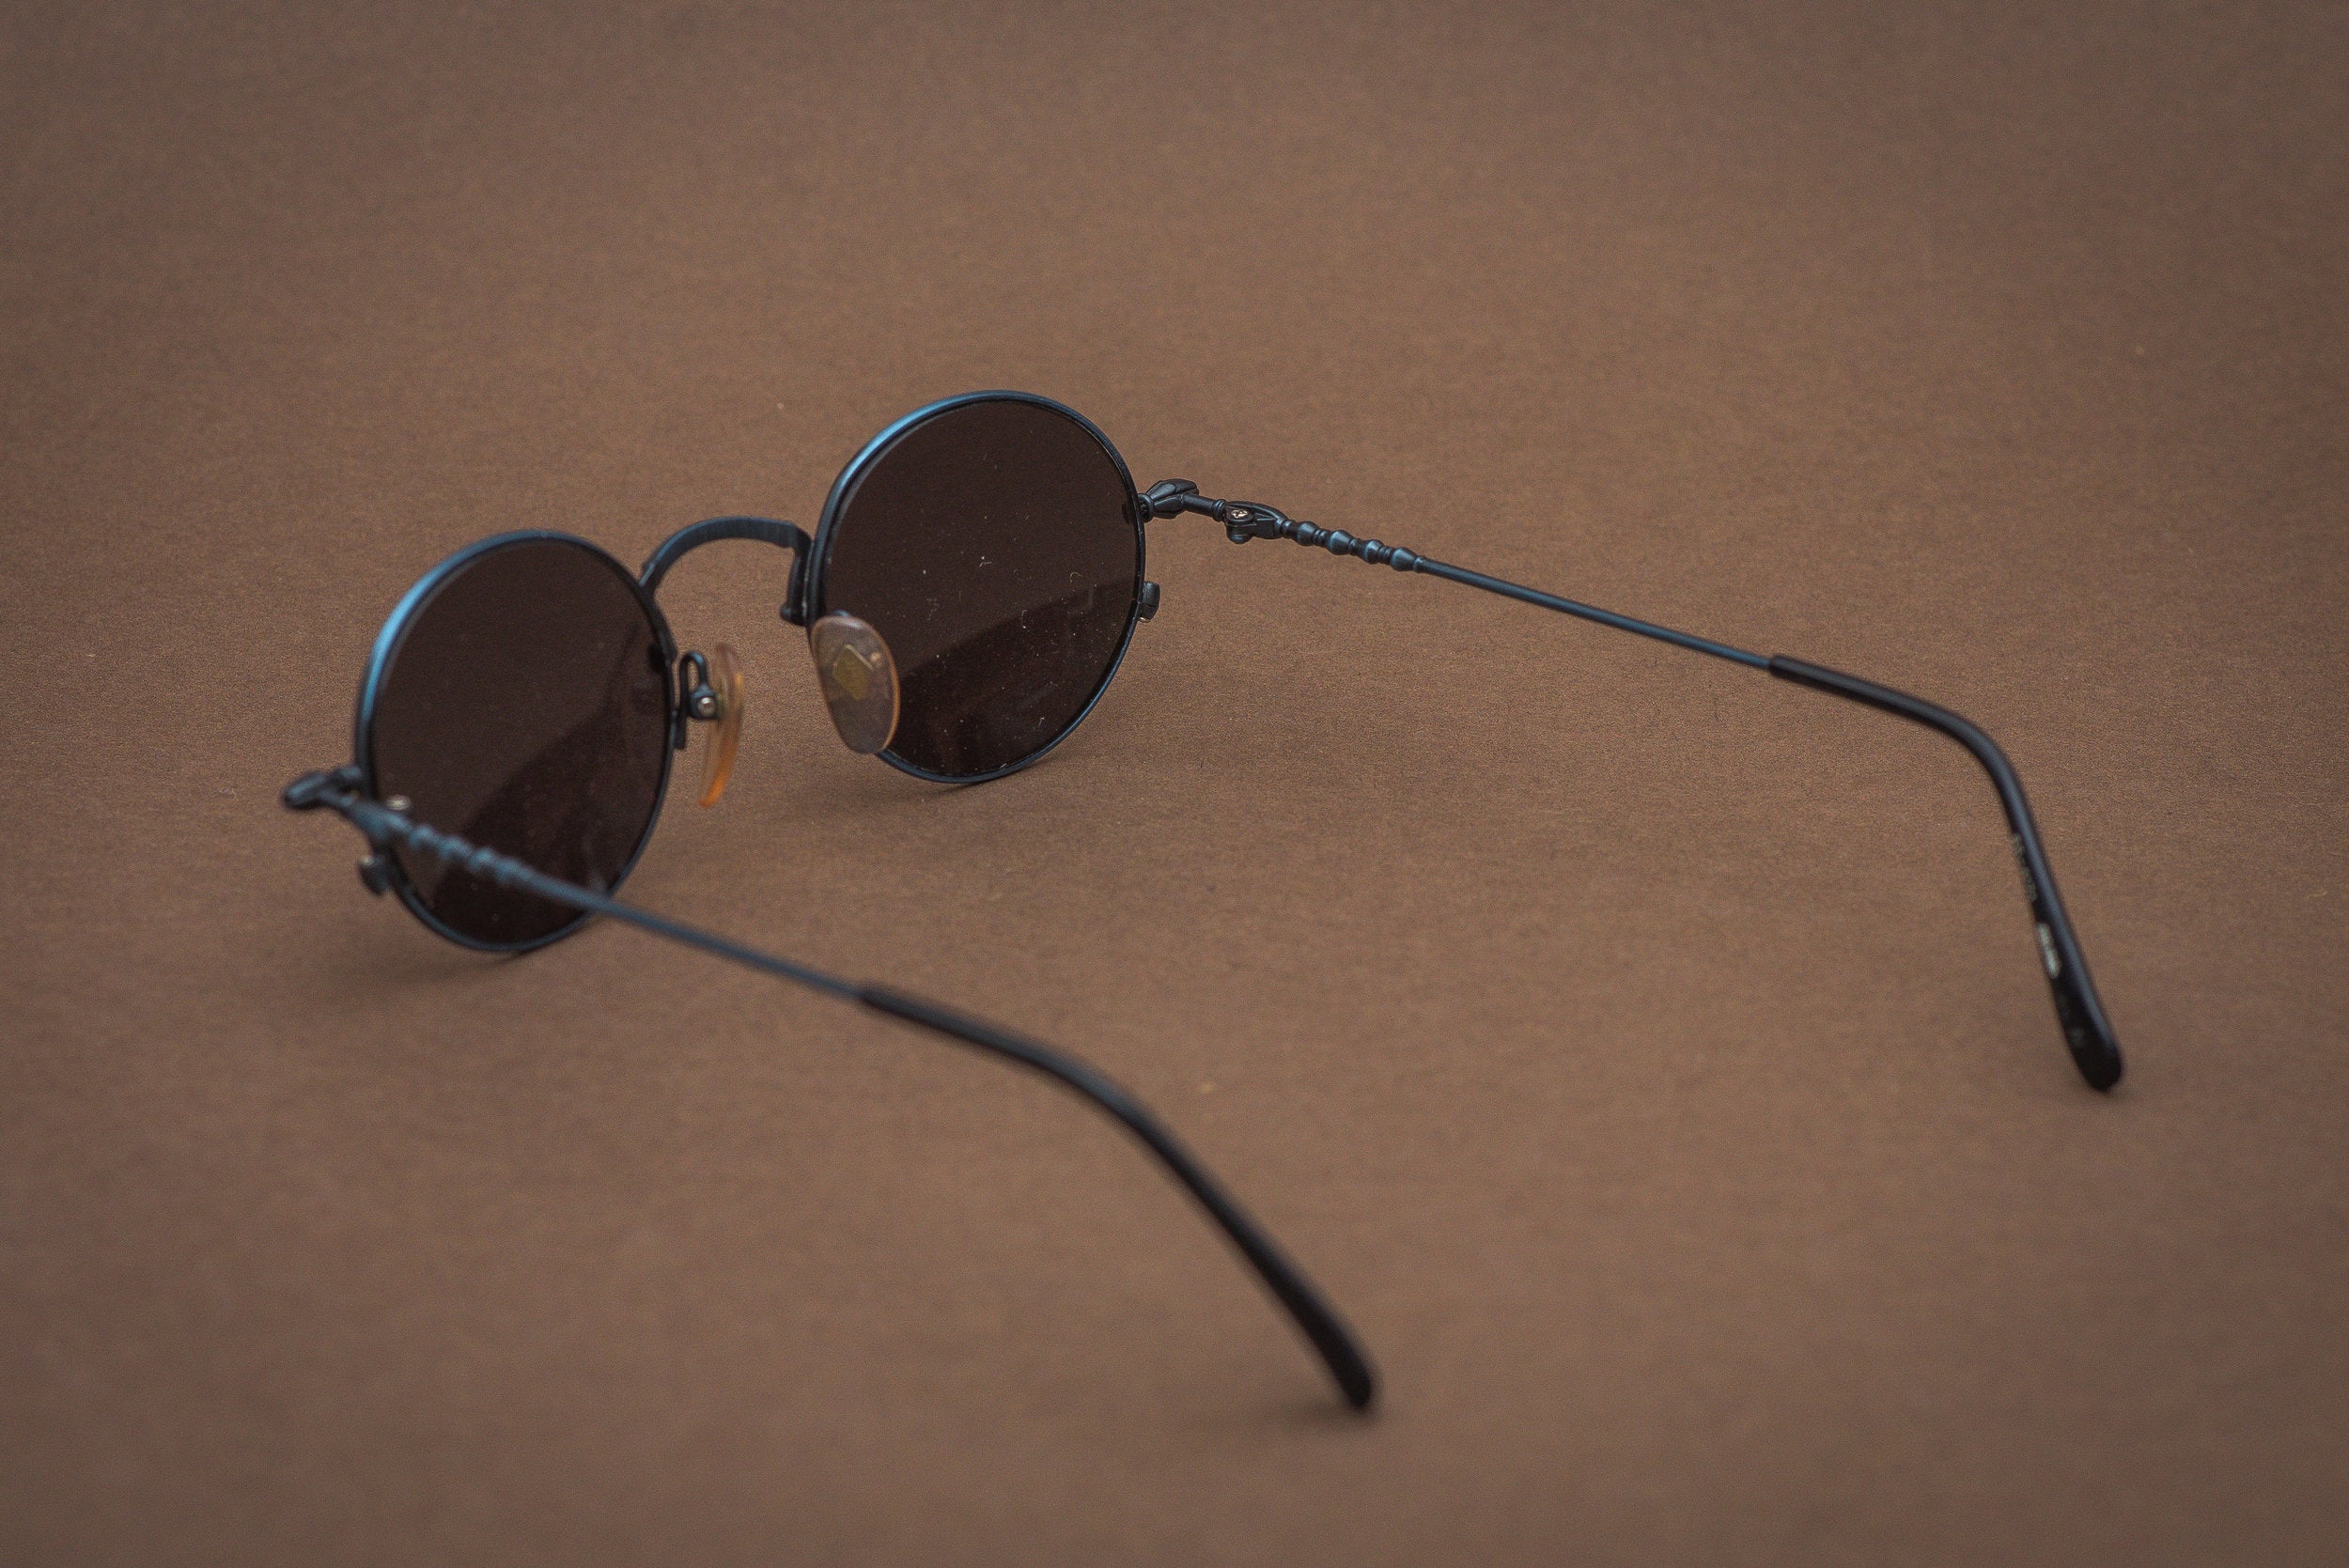 Jean Paul Gaultier 55-4171 sunglasses